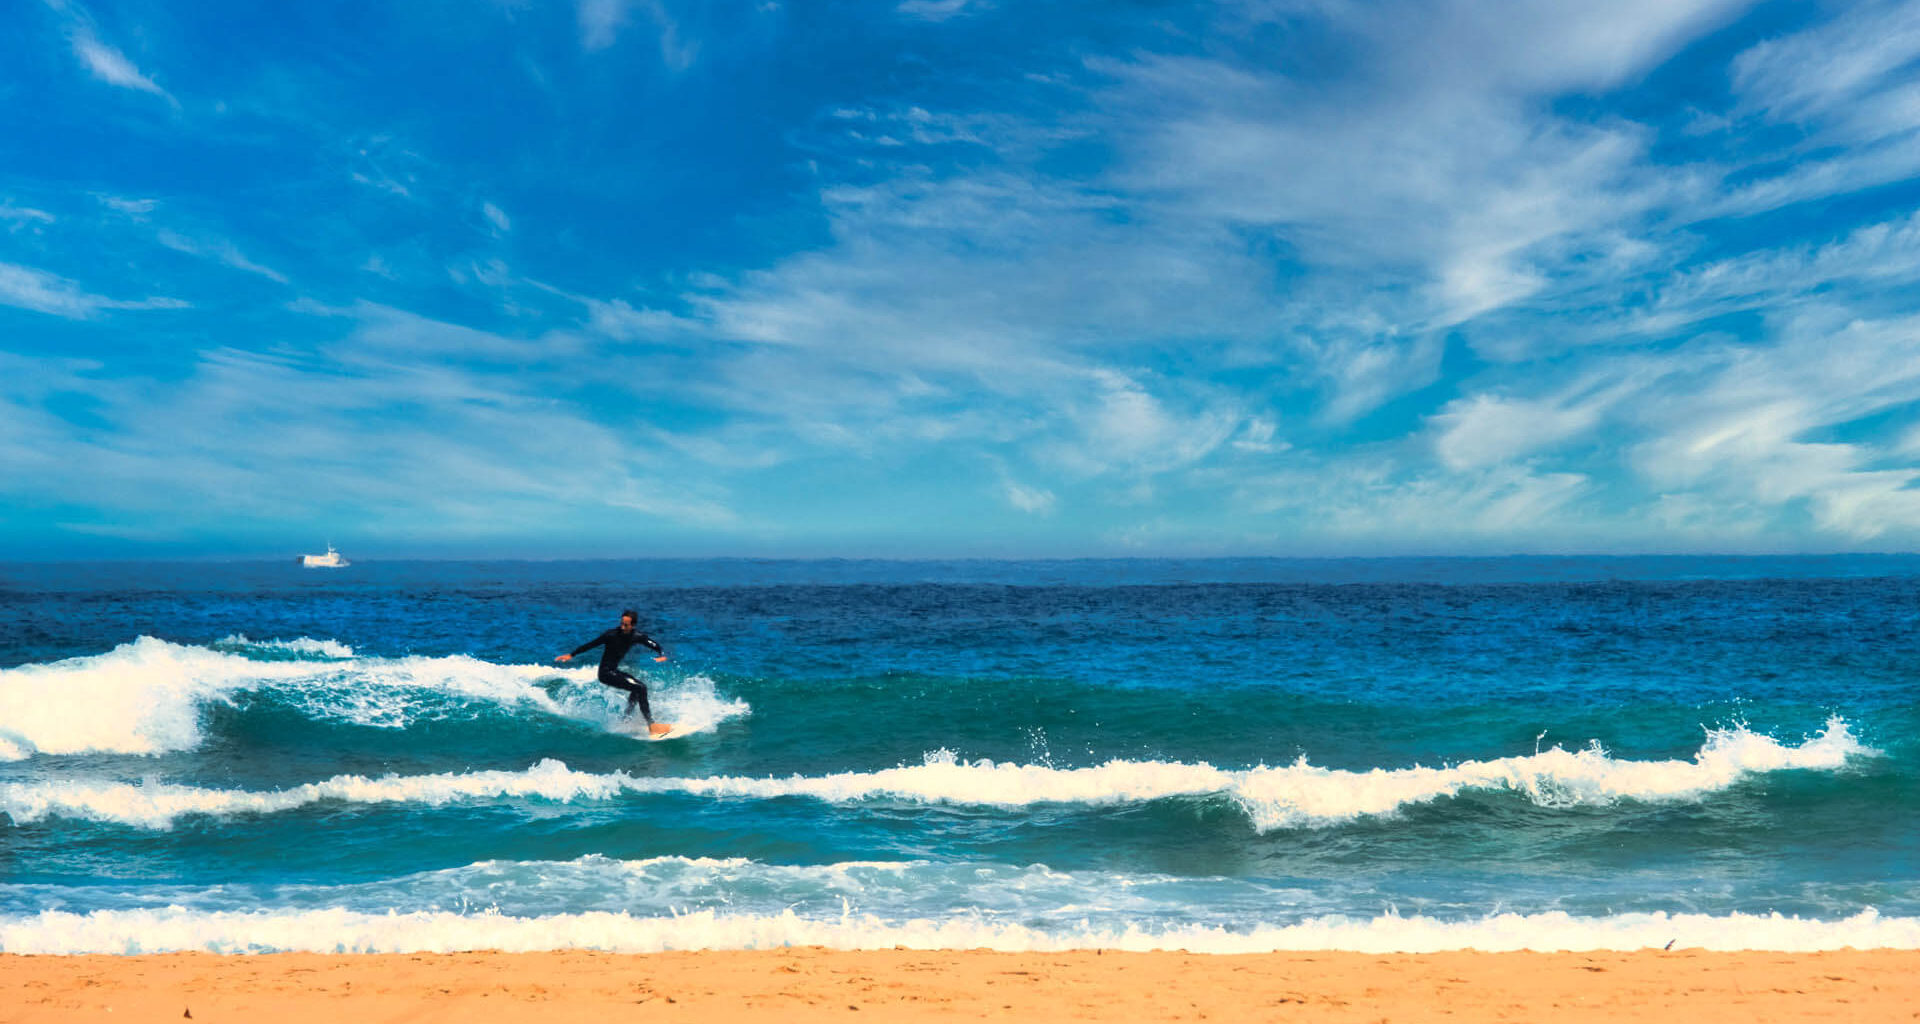 surfer-on-wave